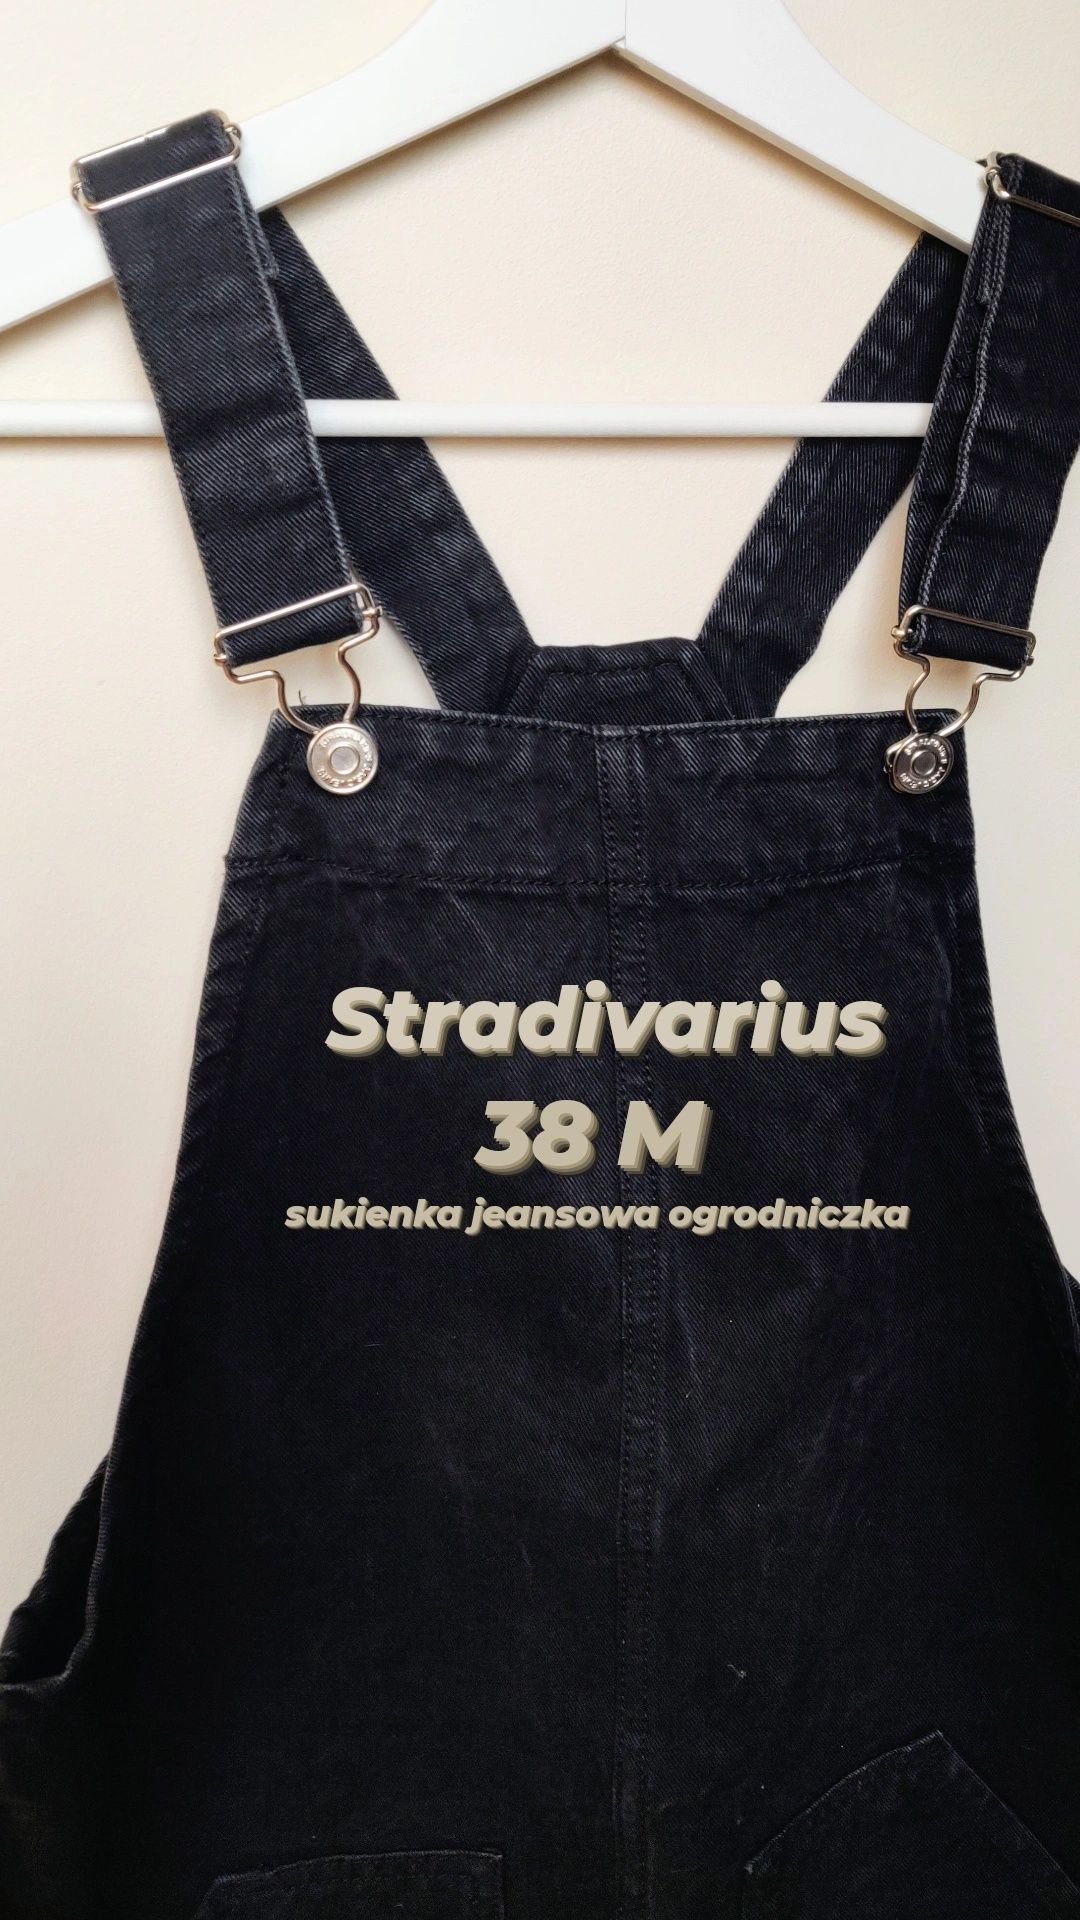 Sukienka spódnica ogrodniczka jeansowa Stradivarius 38 M jak nowa